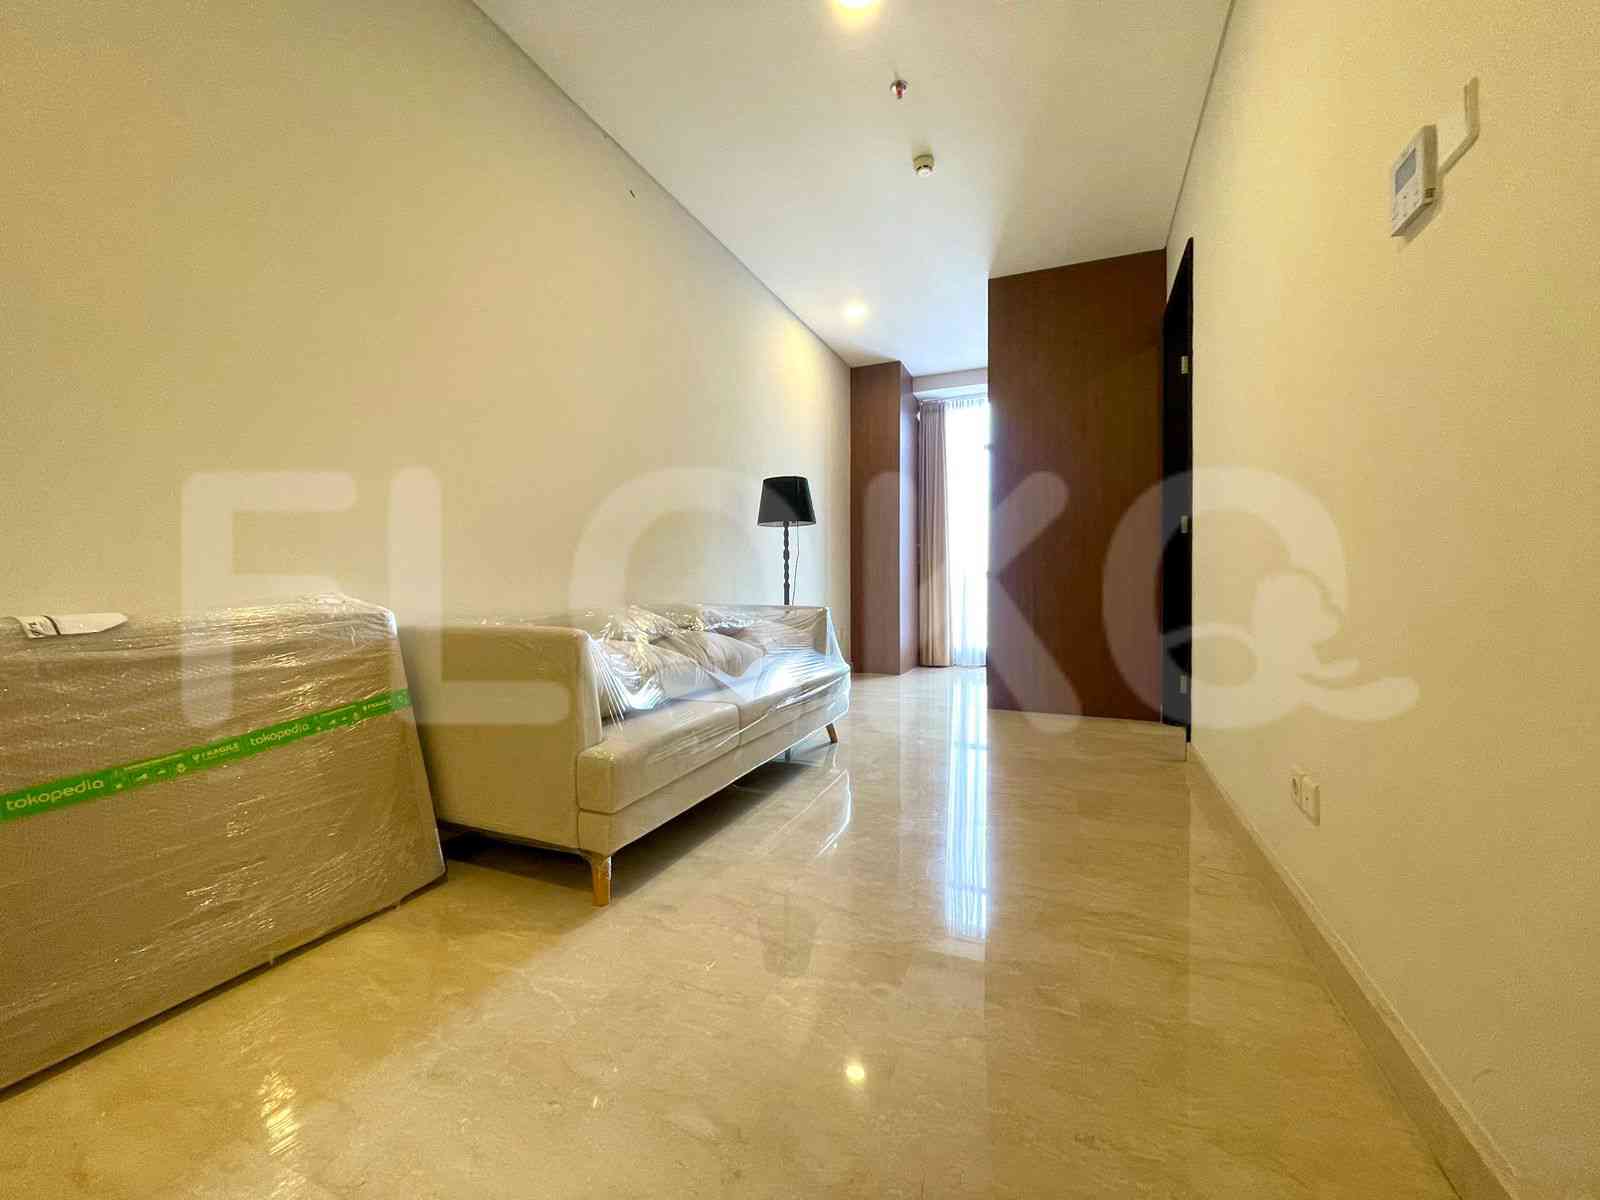 2 Bedroom on 15th Floor for Rent in Sudirman Suites Jakarta - fsu806 1